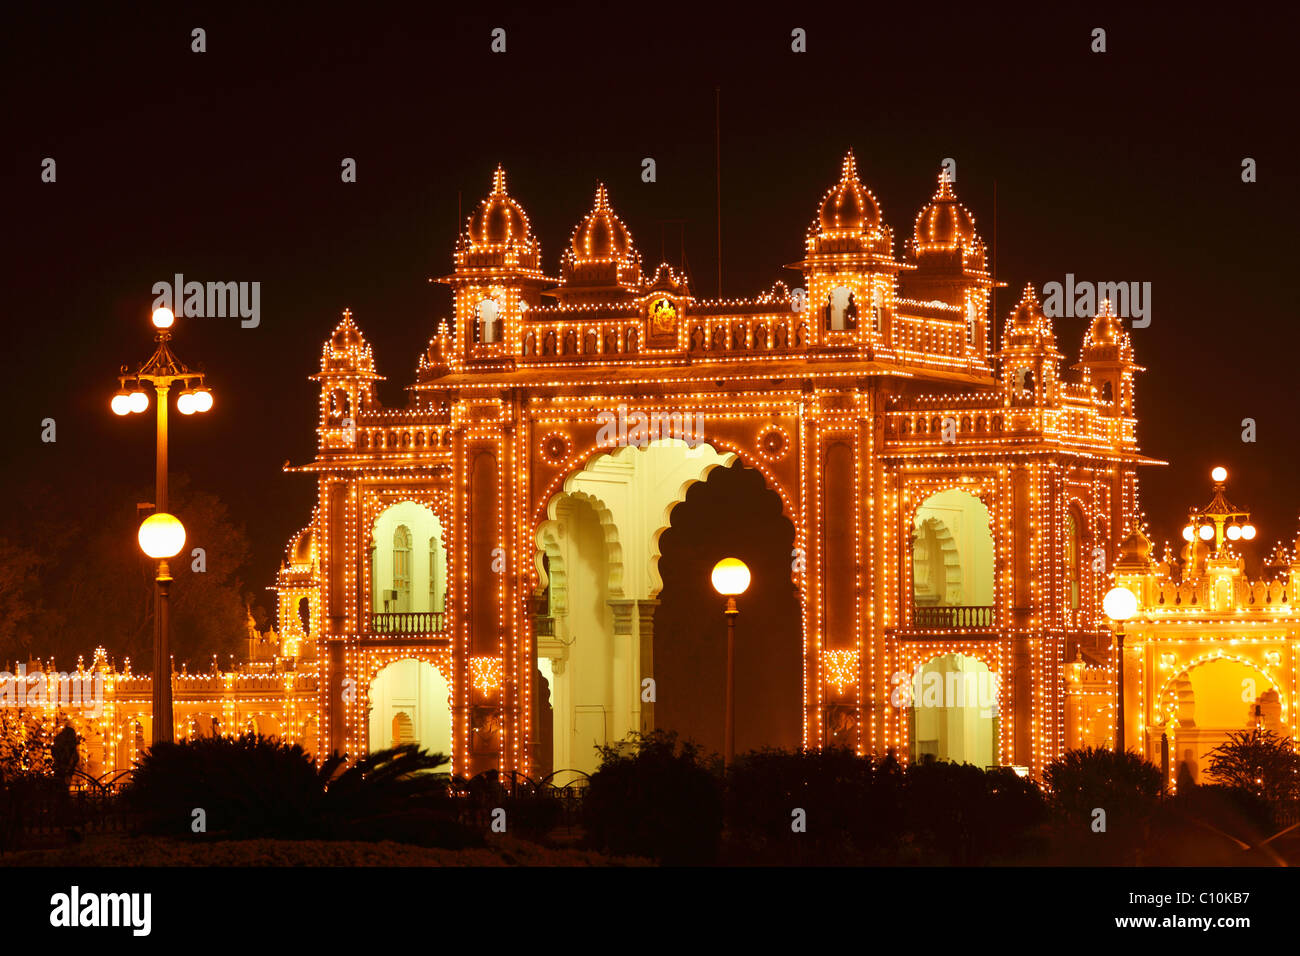 East Gate von Maharaja Palace, Mysore Palast, Amba Vilas, Beleuchtung an einem Sonntag mit Glühbirnen, Südindien, Indien Stockfoto